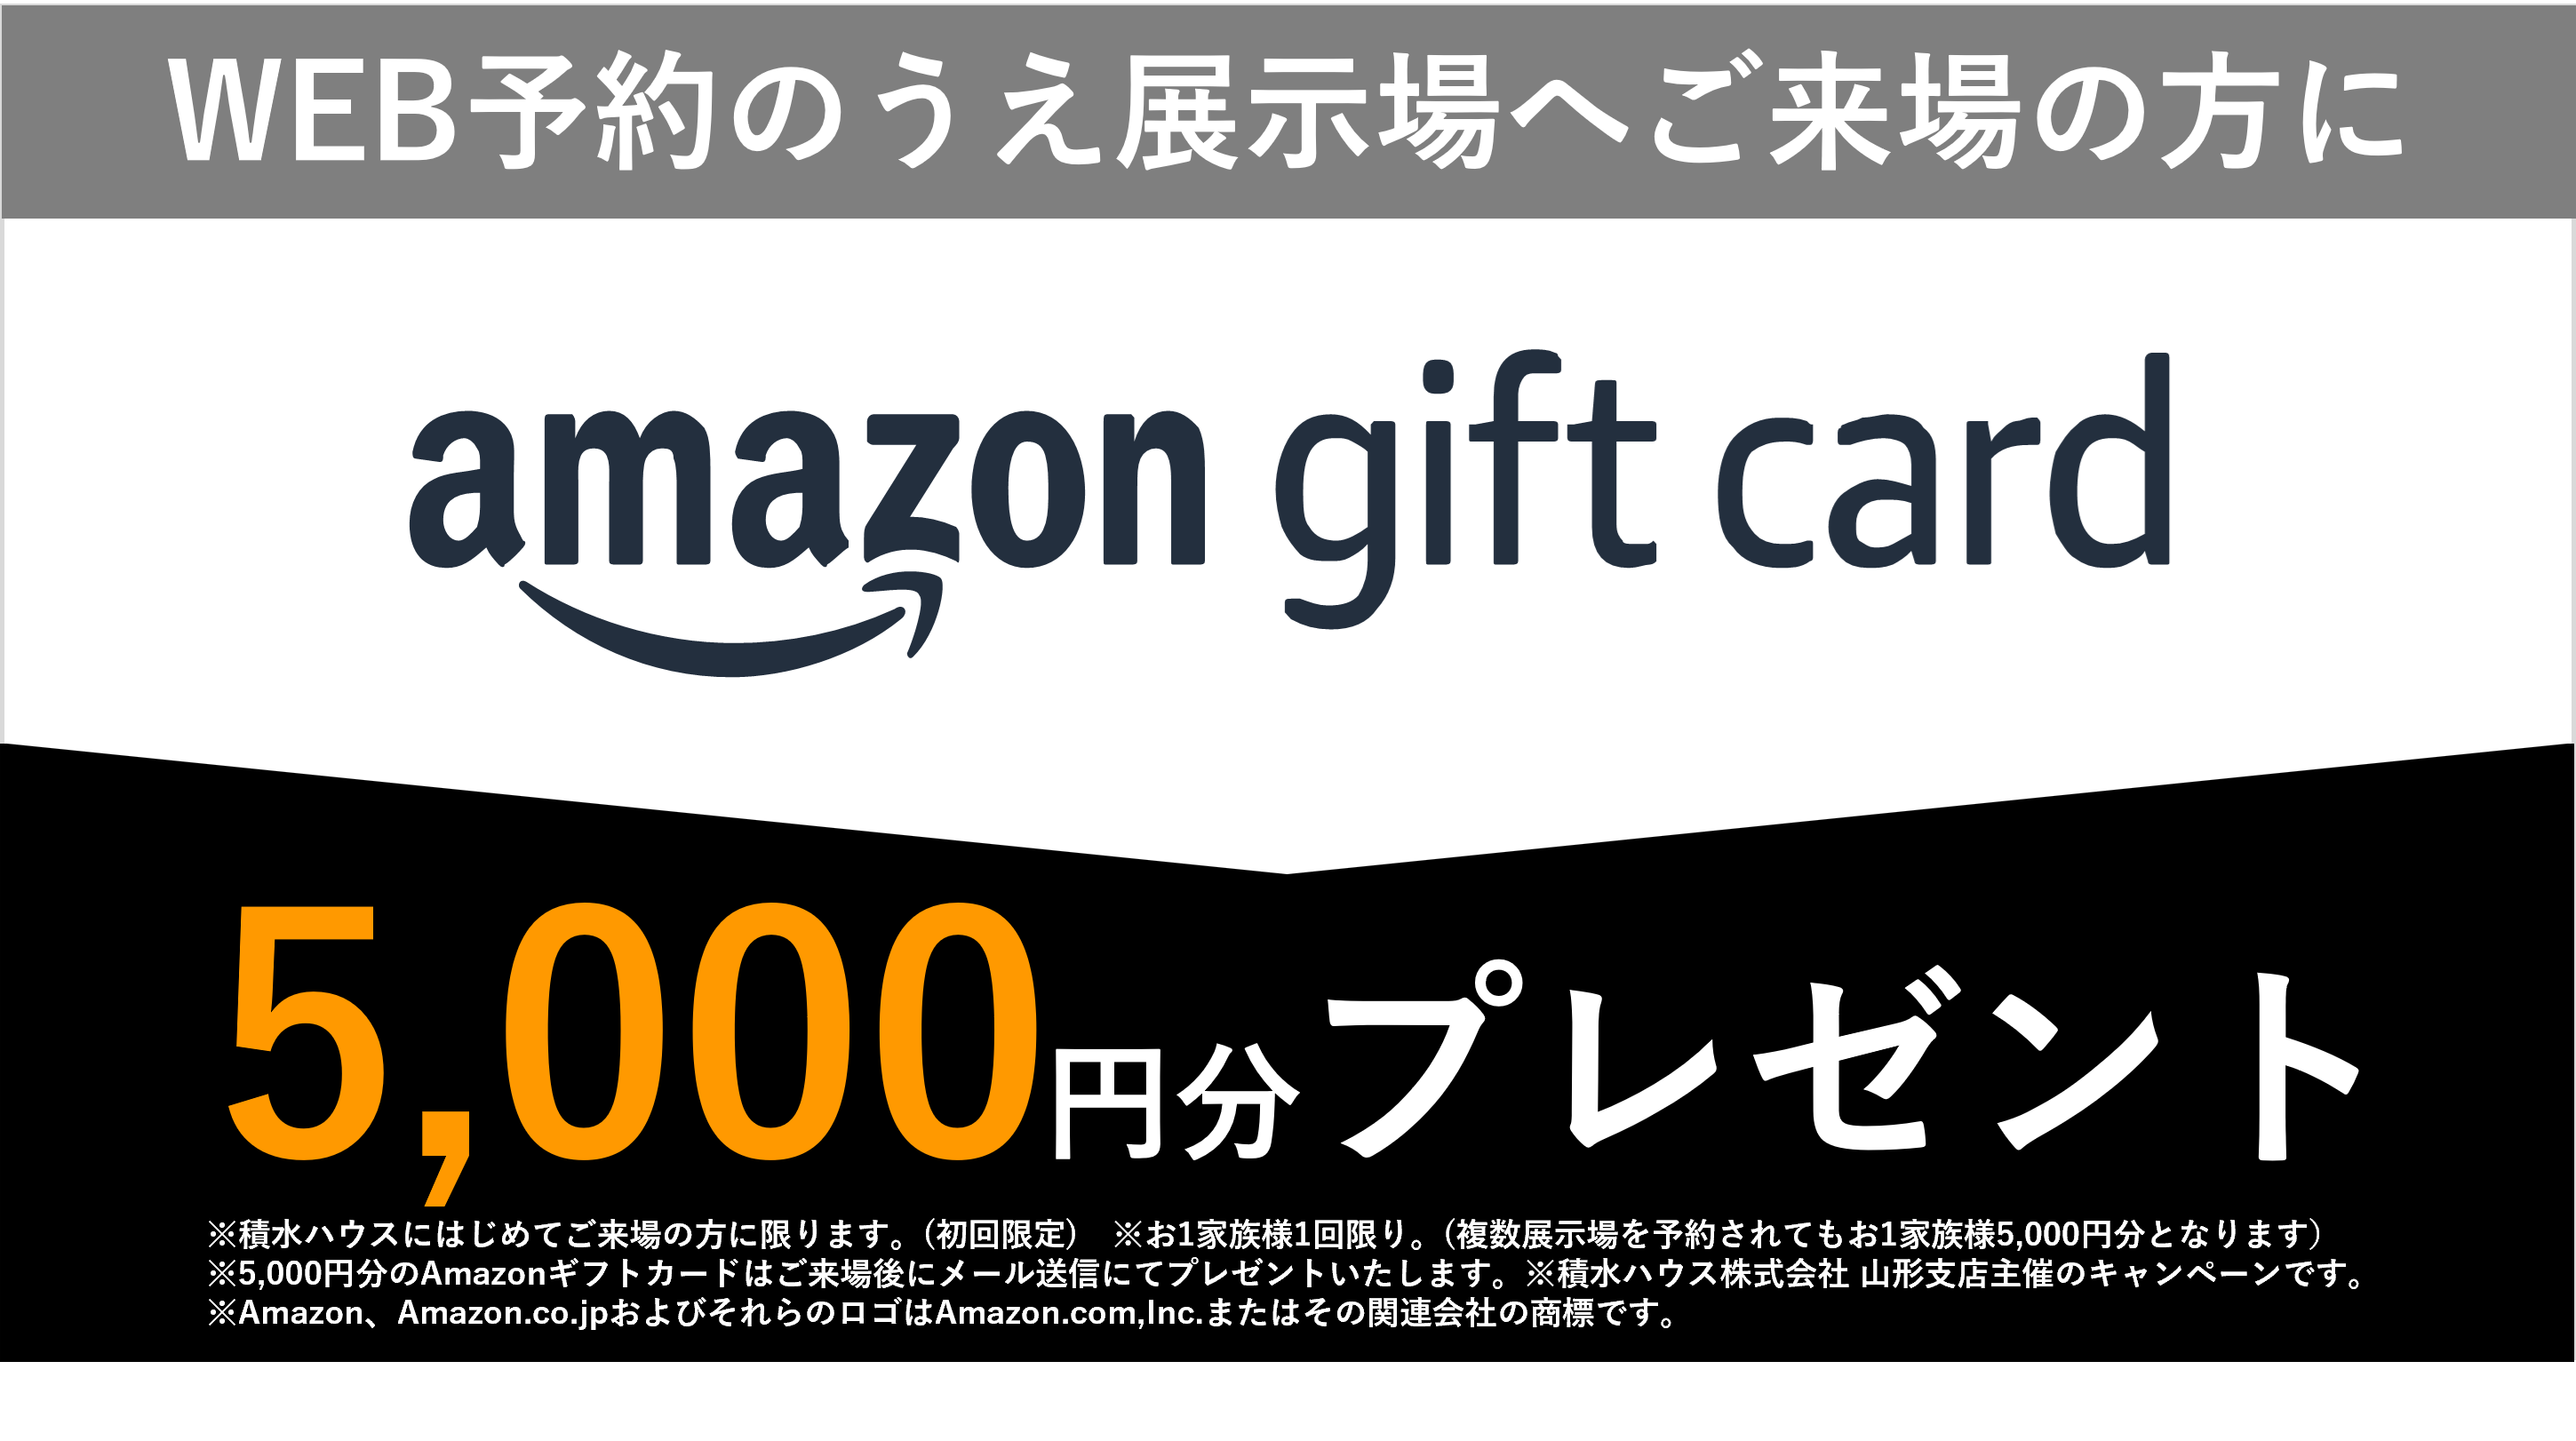 WEB予約のうえ展示場へご来場の方に amazon gift card 5,000円分プレゼント